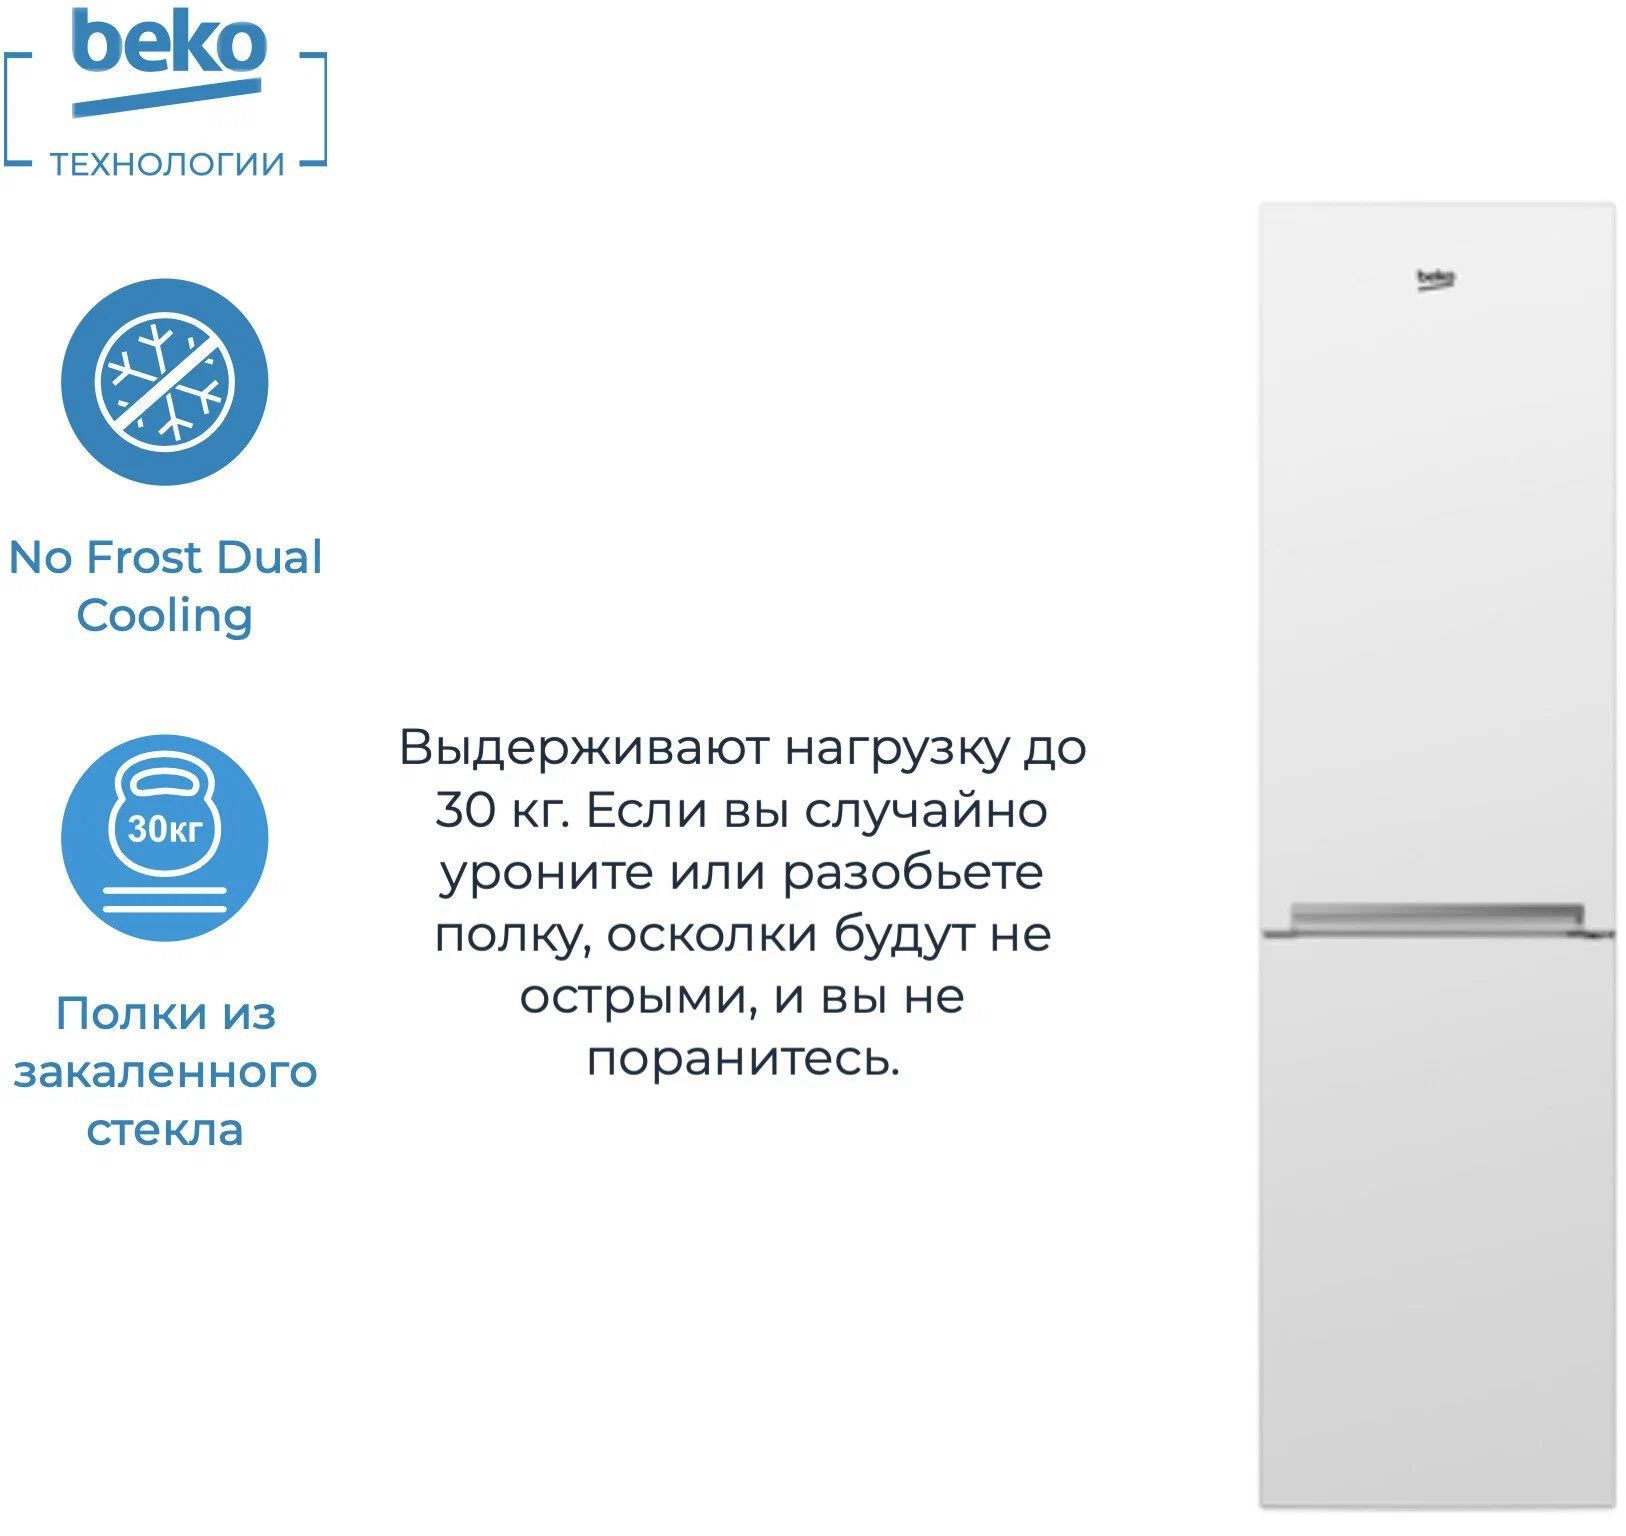 холодильник beko rcnk335k00w, купить в Красноярске холодильник beko rcnk335k00w,  купить в Красноярске дешево холодильник beko rcnk335k00w, купить в Красноярске минимальной цене холодильник beko rcnk335k00w